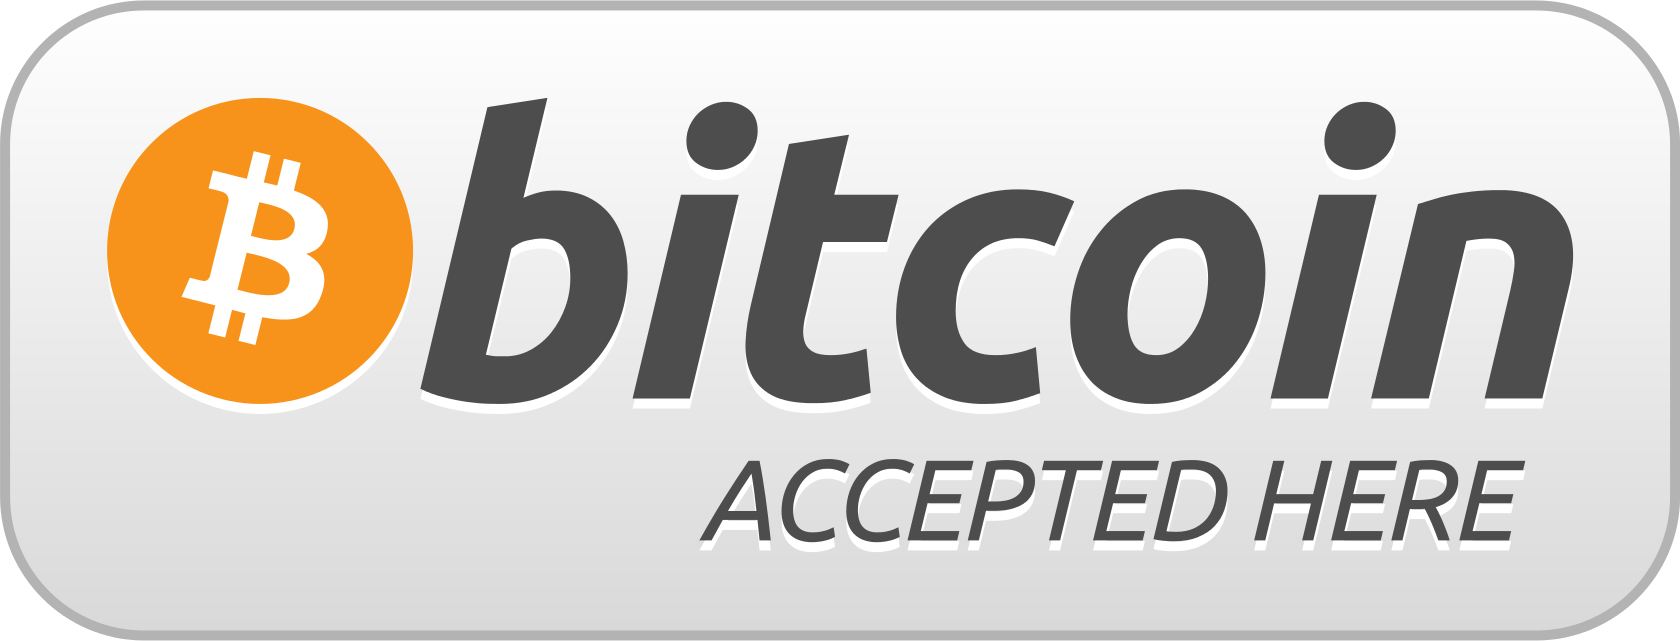 Akceptujemy bitcoiny